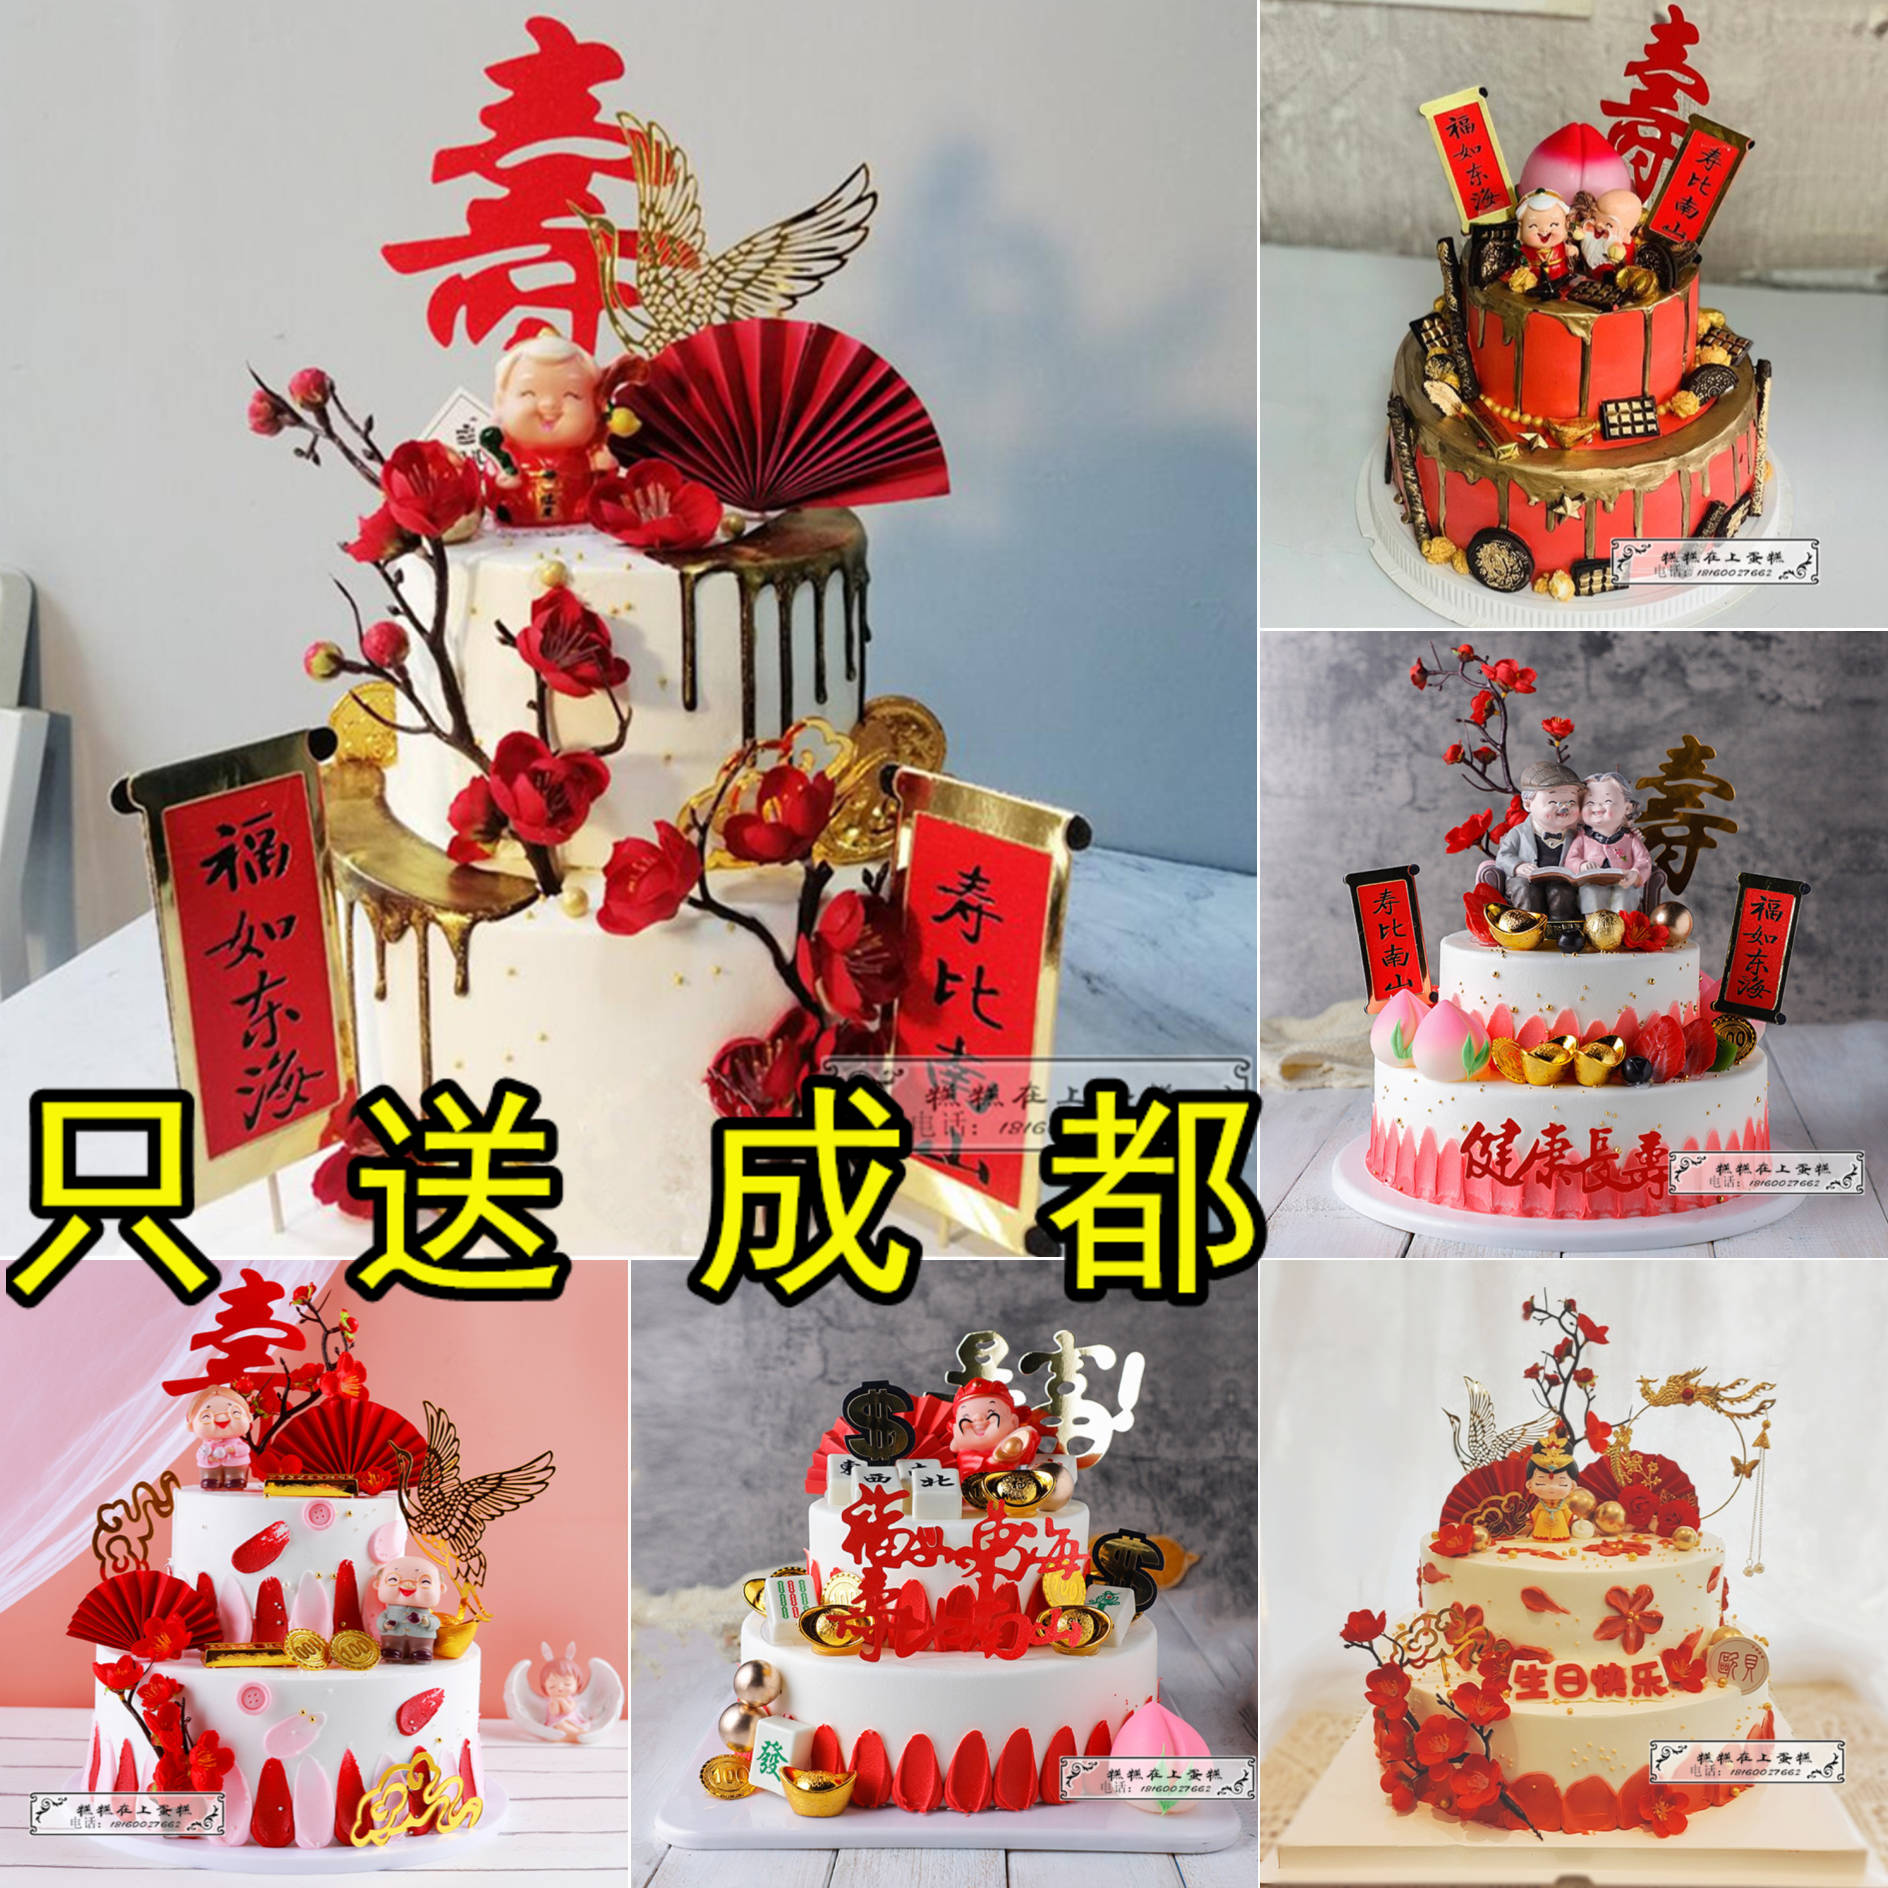 网红双层老人祝寿星男寿桃爷爷奶奶生日蛋糕创意定制成都同城配送